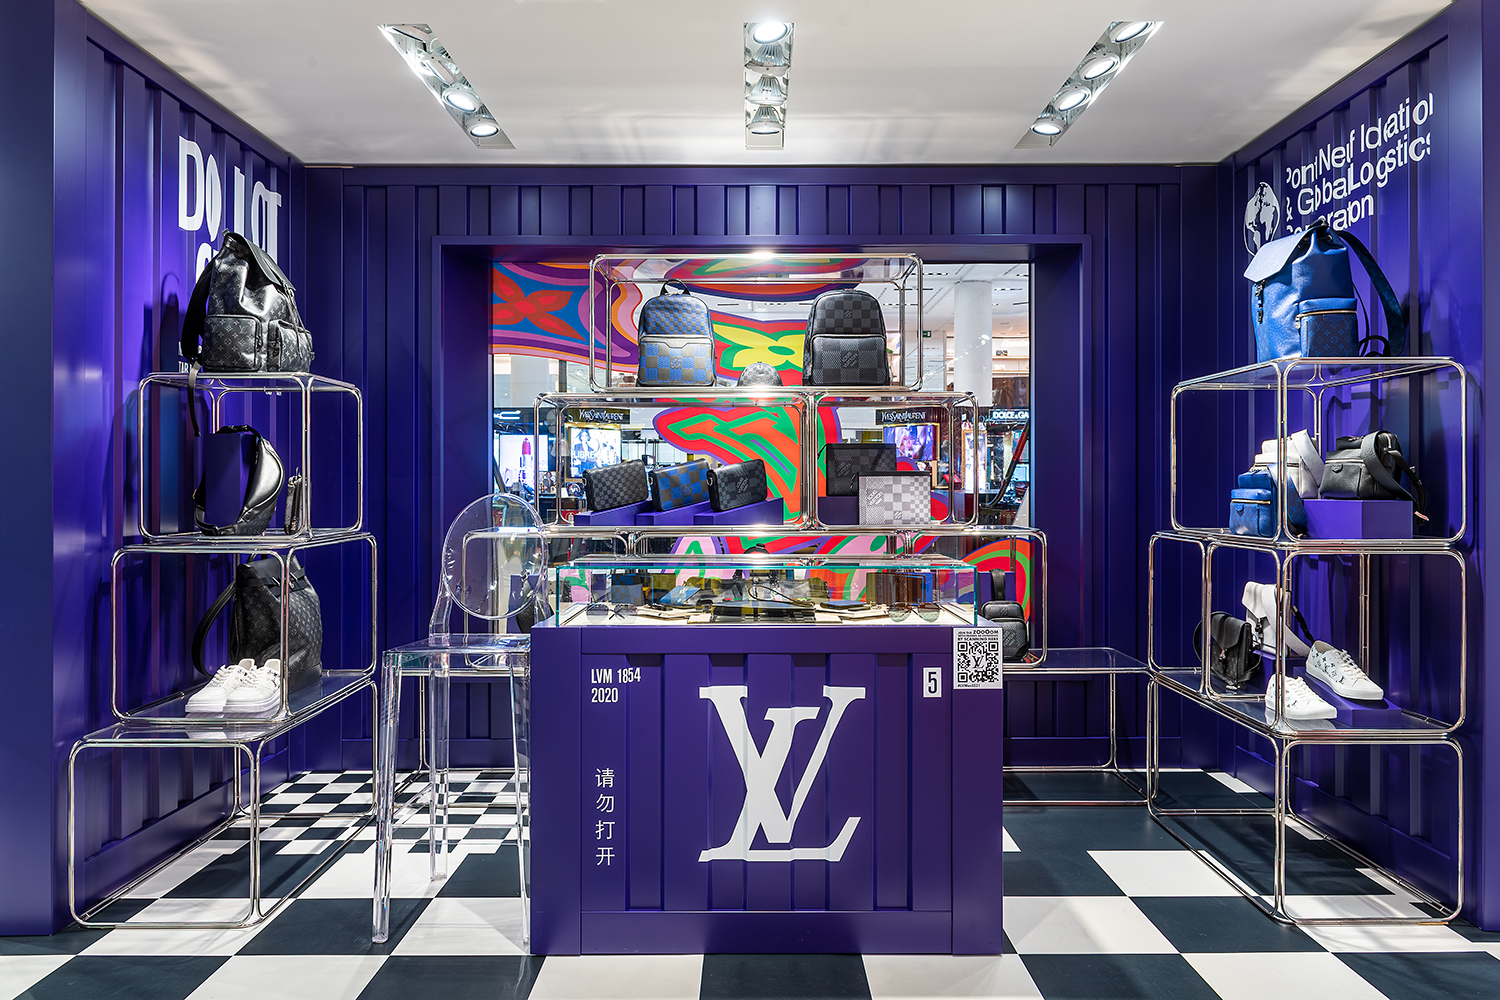 Louis Vuitton Singapore launches men's pop-up - Inside Retail Asia